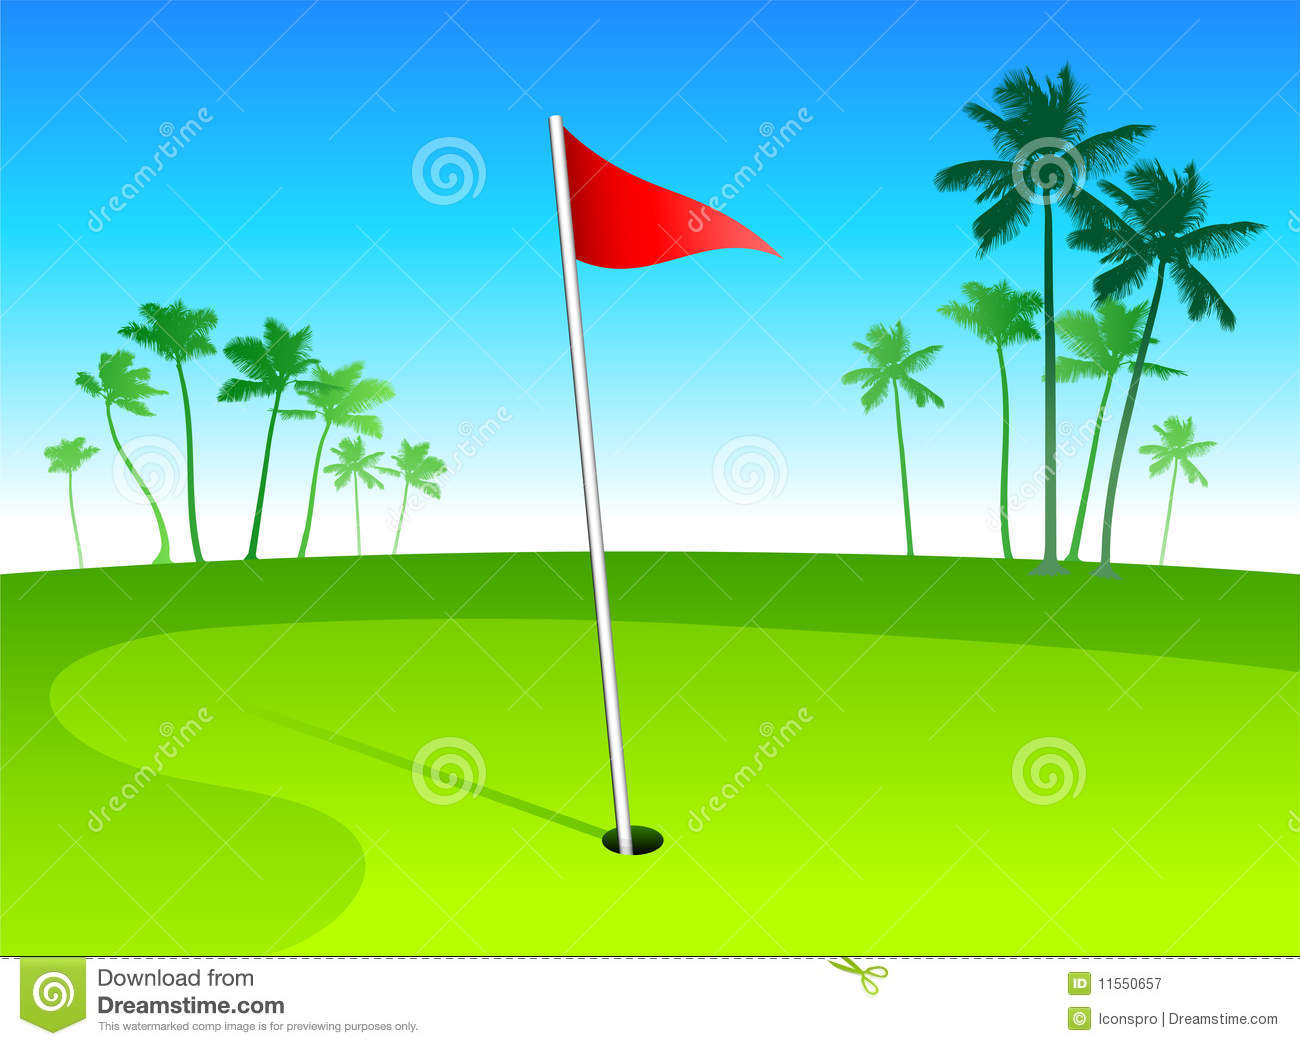 Golf Course clip art